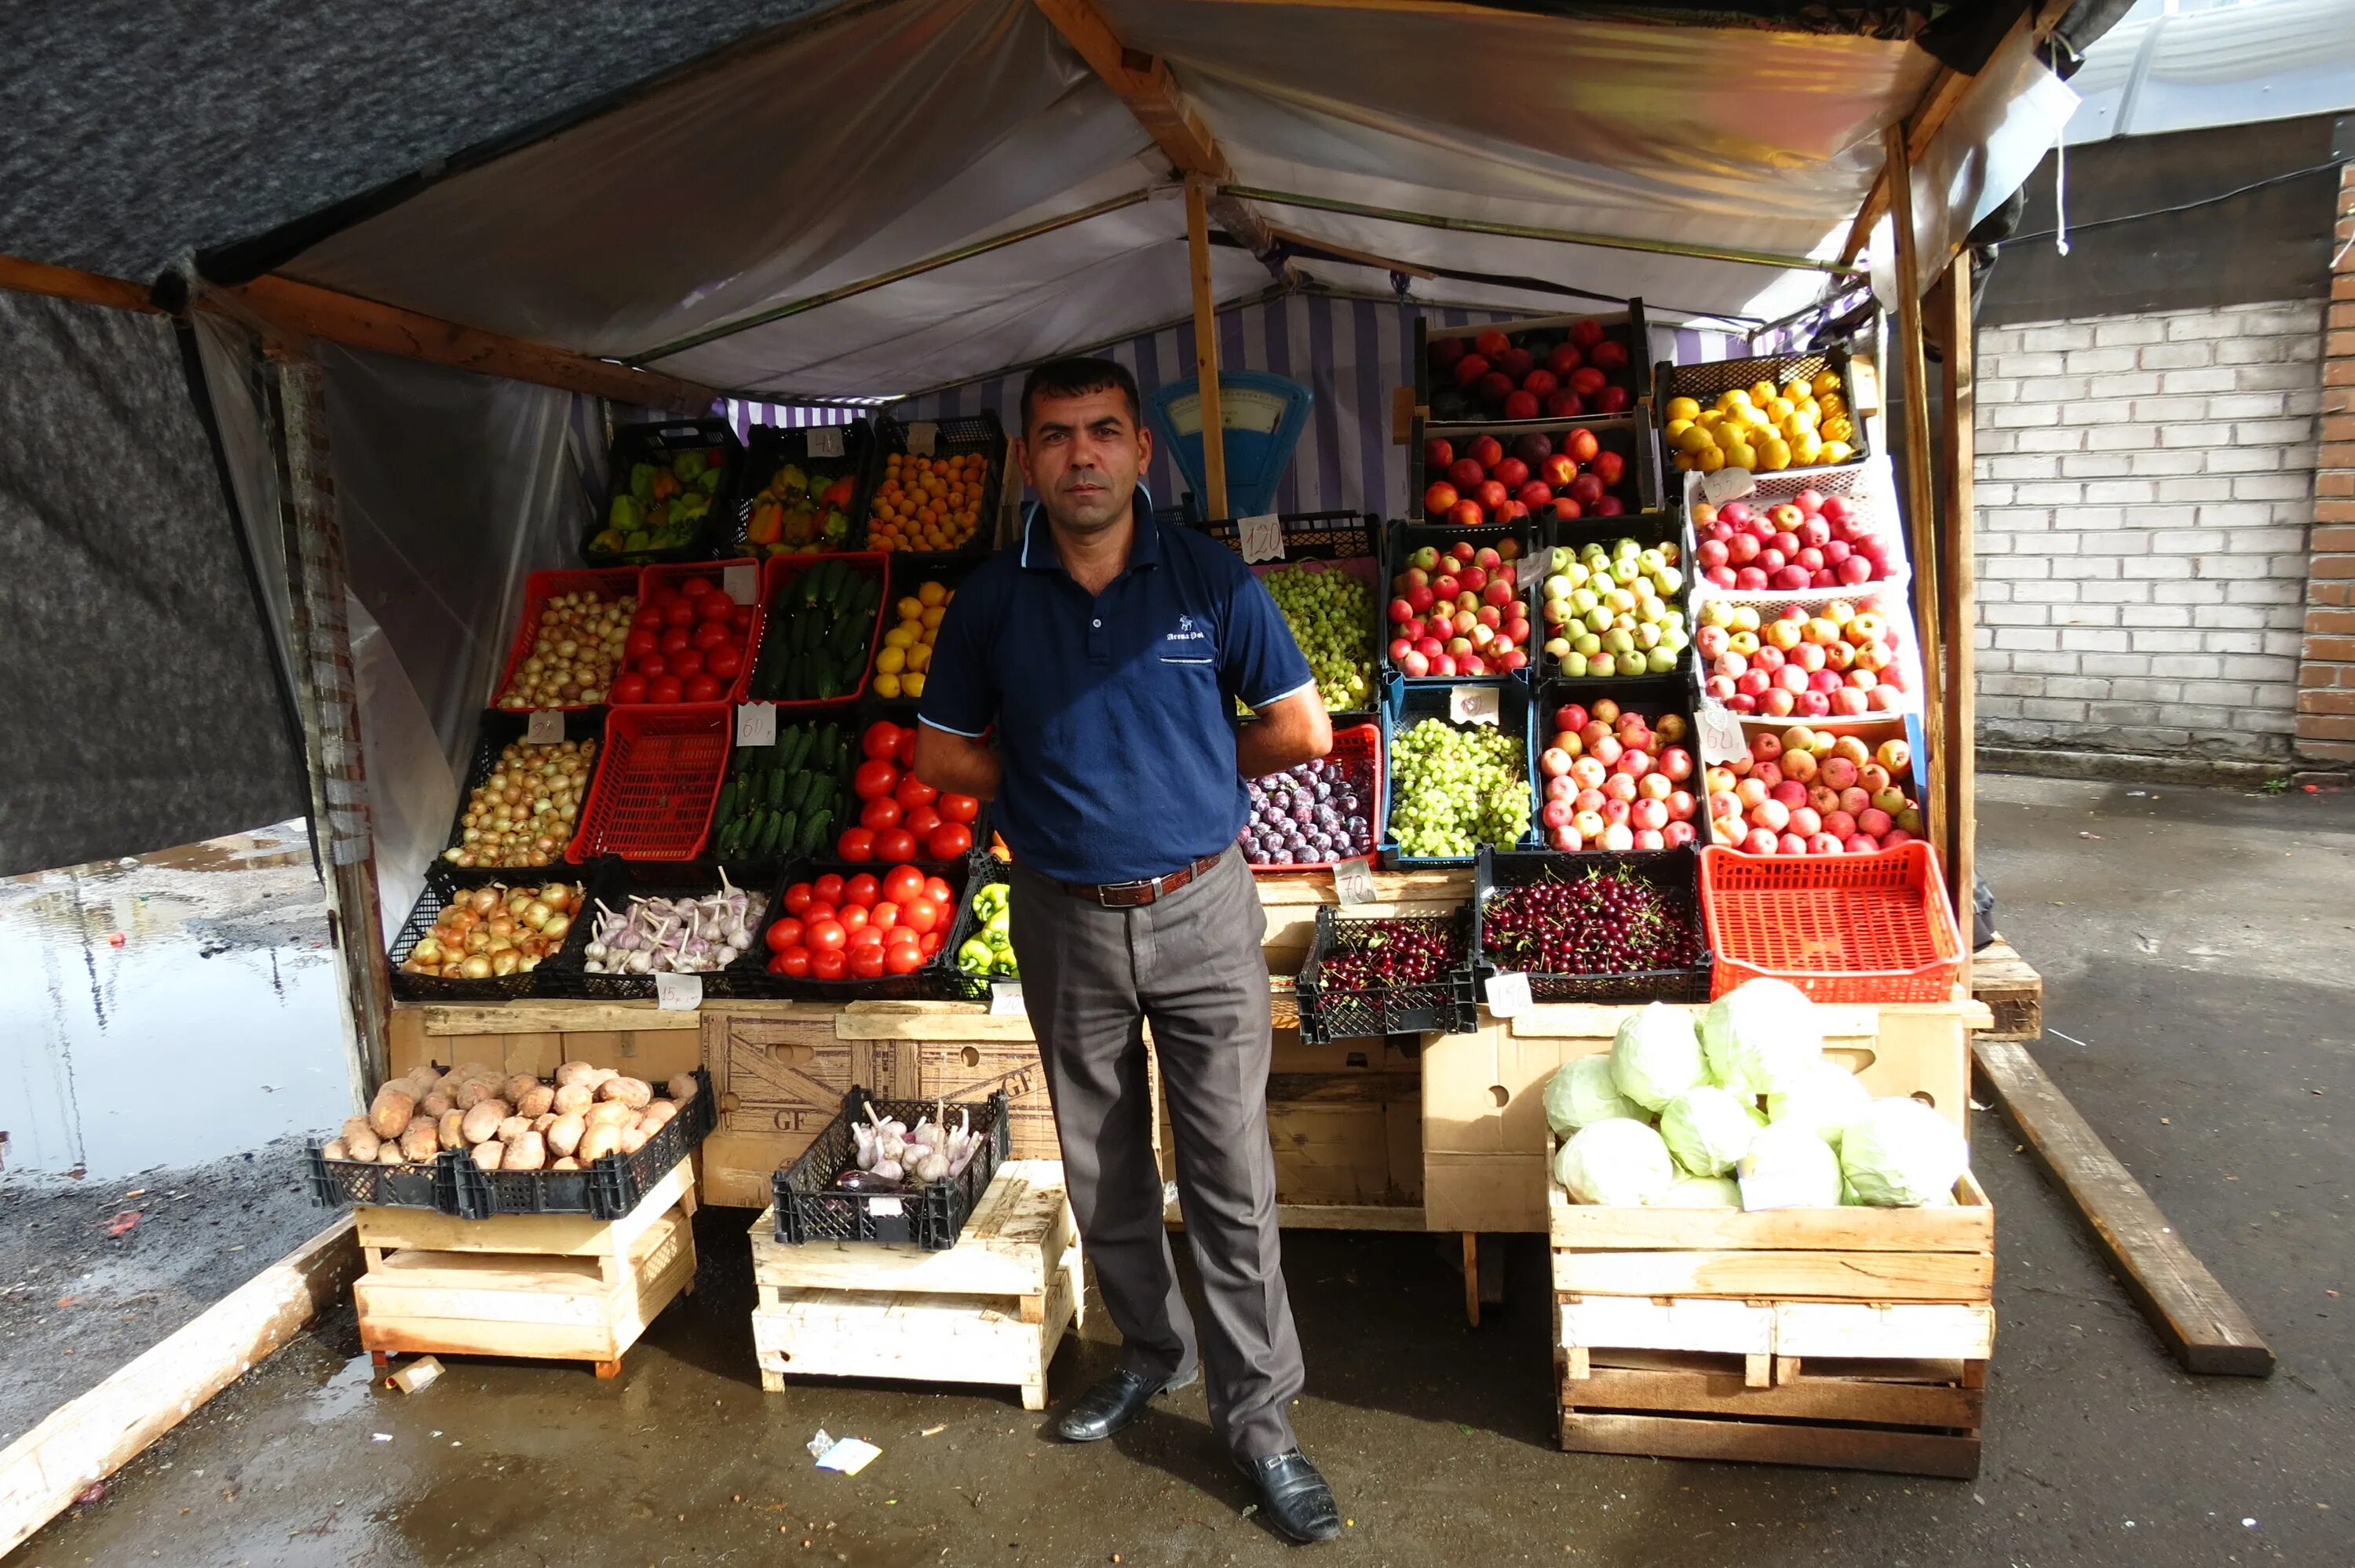 Уличная торговля овощами и фруктами. Палатка с фруктами. Палатка с овощами. Прилавок на рынке.